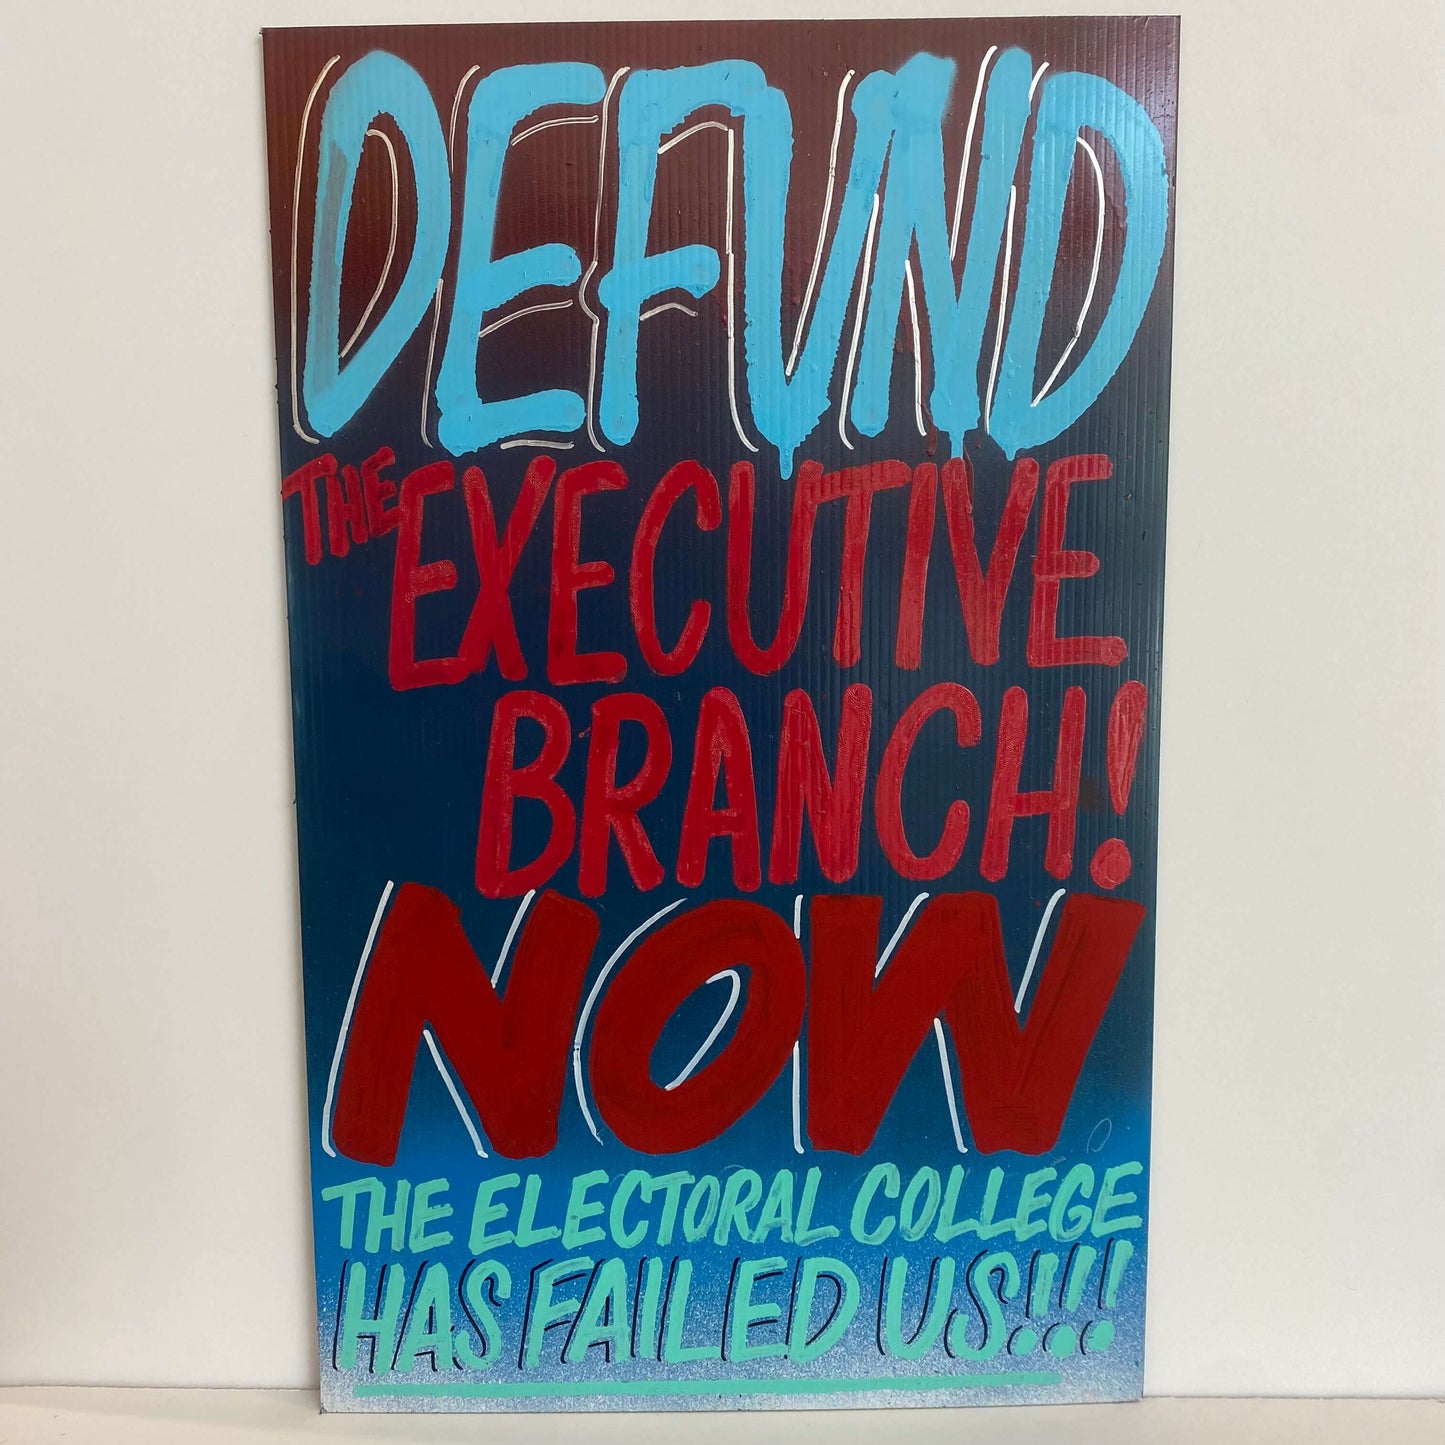 CASH4 'Defund Executive Branch'